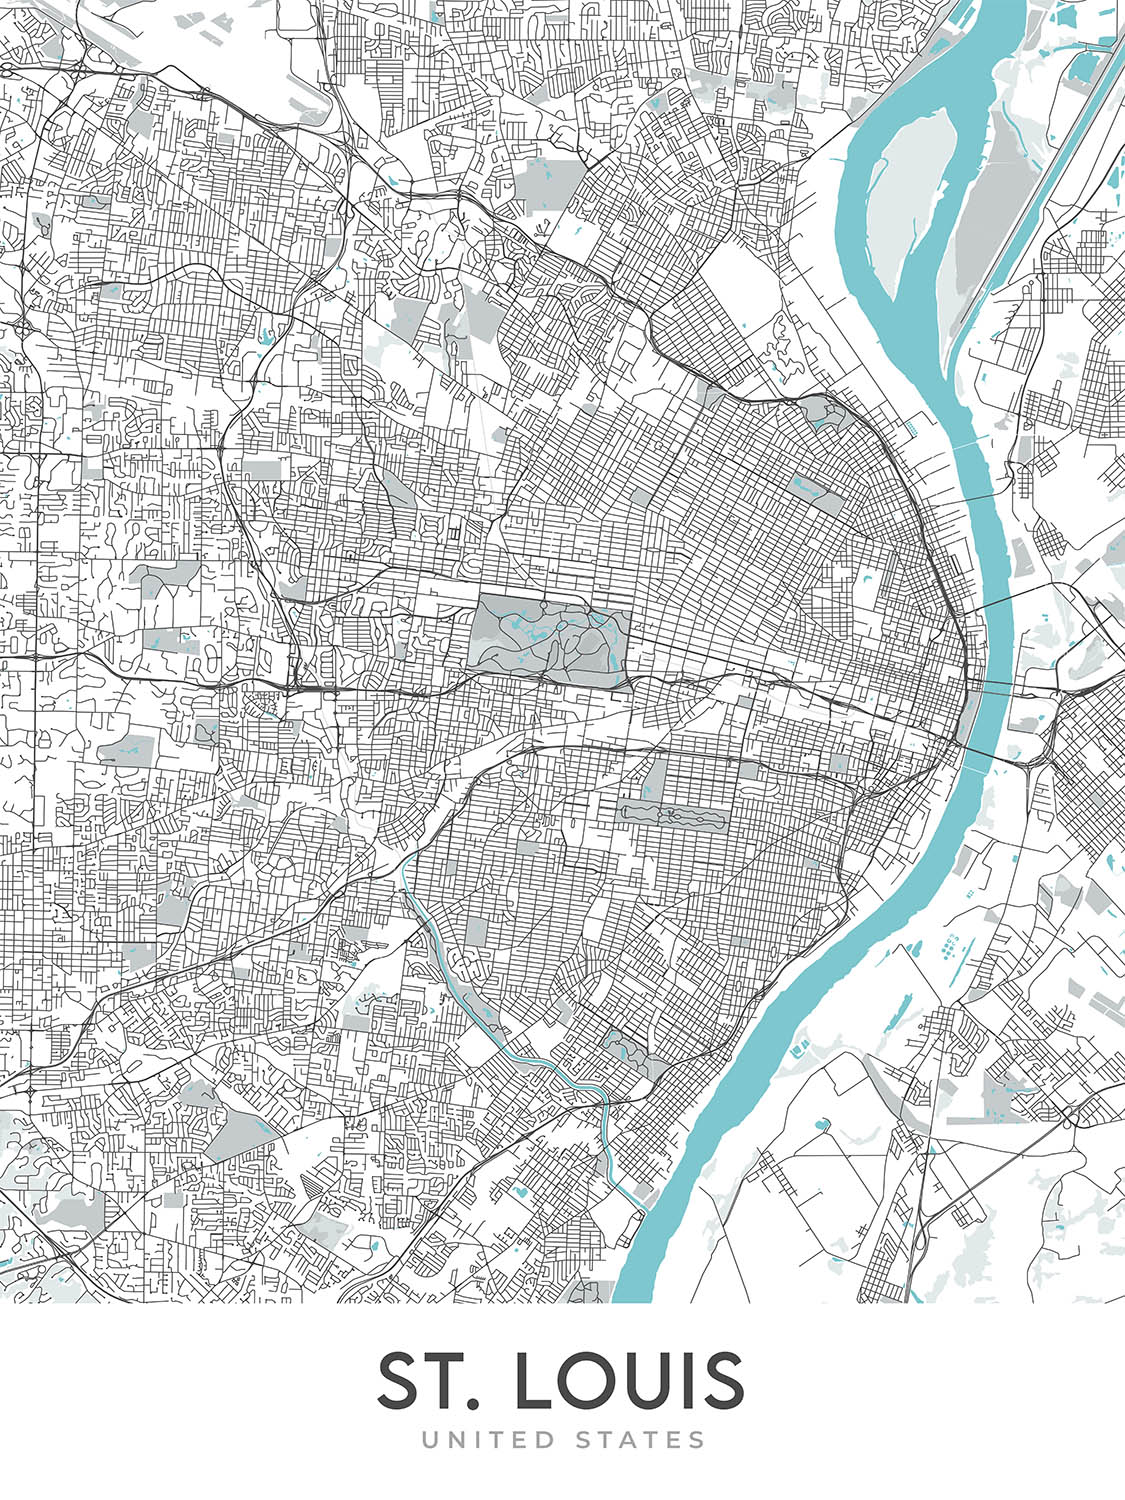 Moderner Stadtplan von St. Louis, MO: Gateway Arch, Busch Stadium, Forest Park, Soulard, Central West End